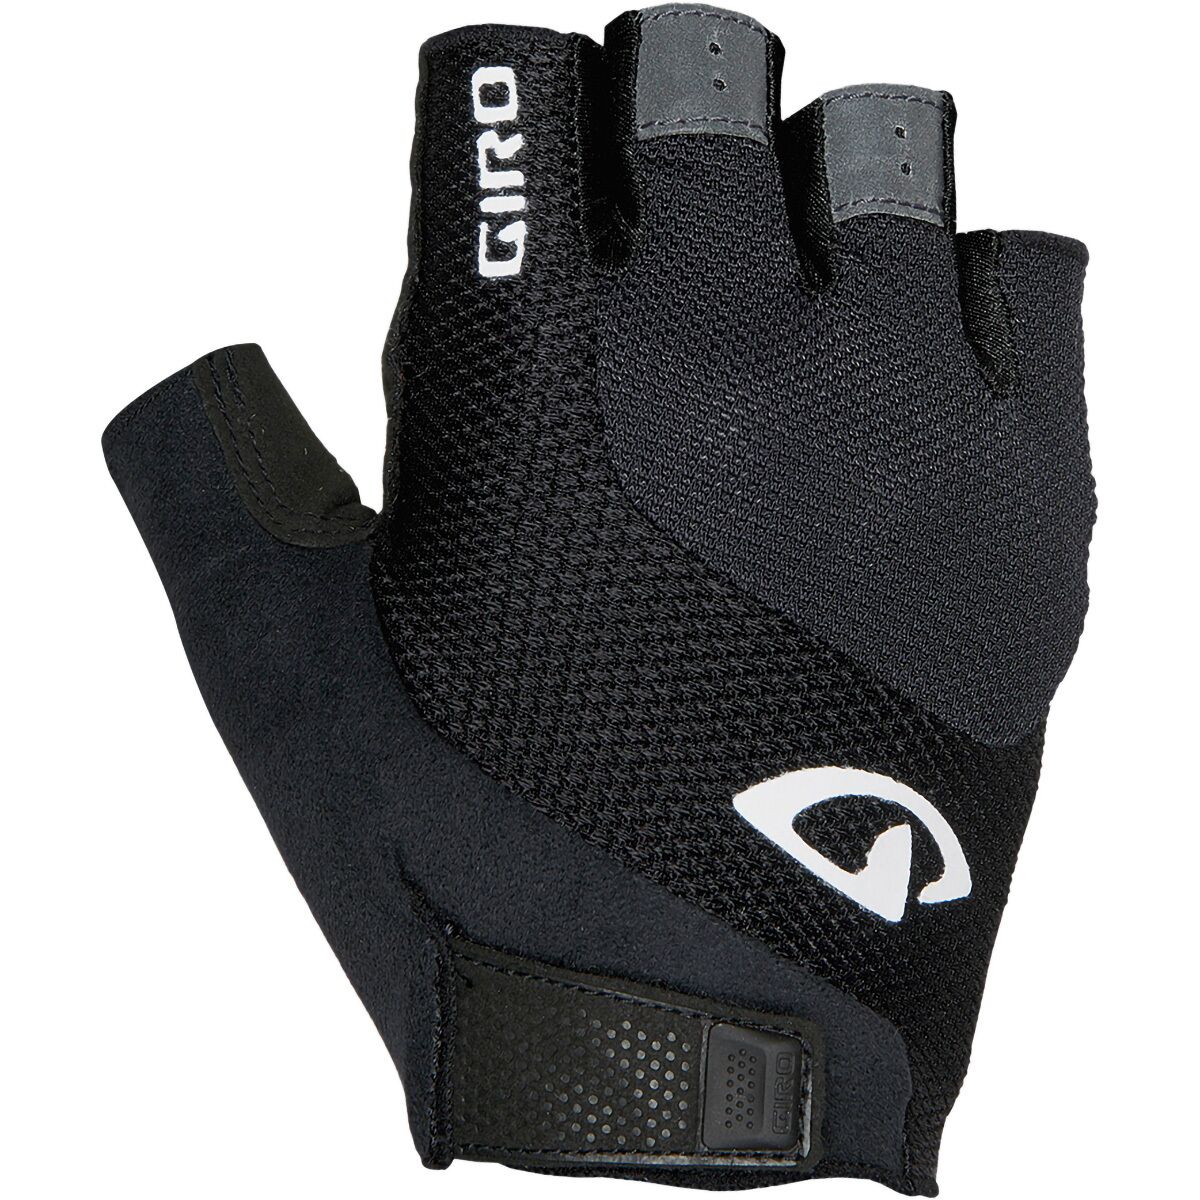 Giro Tessa Gel Glove - Women's Black, S